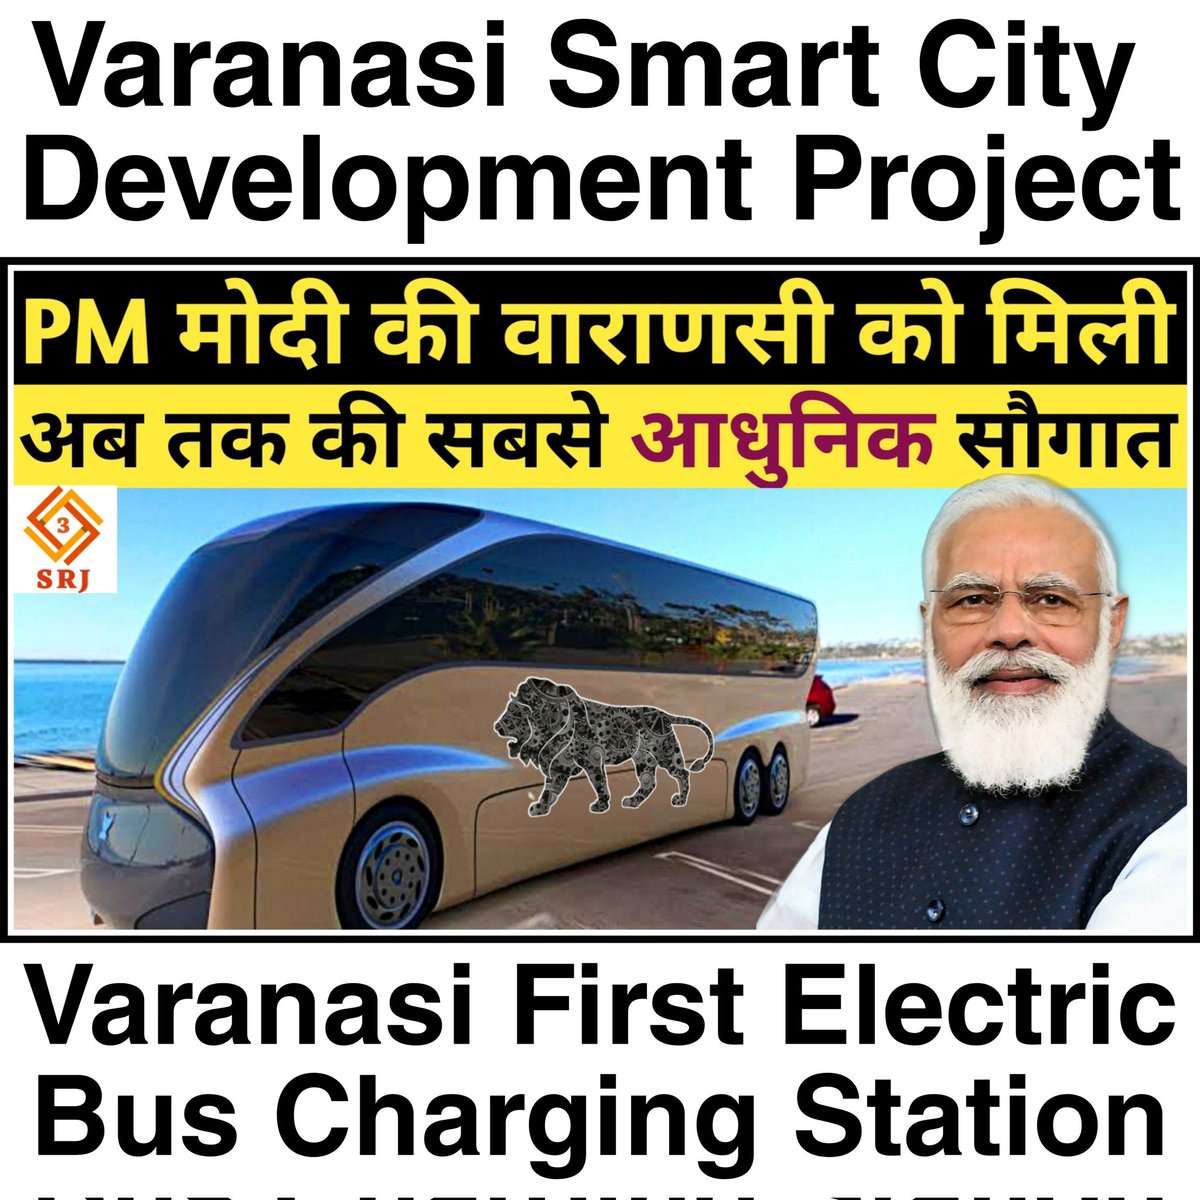 PM मोदी की वाराणसी को मिली अब तक की सबसे आधुनिक सौगात

यूट्यूब पर देखें : youtu.be/wxlusOnxcQk

वेबसाइट पर पढ़े : indiansrj.com/electric-bus-c…

#Varanasi #VaranasiSmartcity #ElectricBusChargingStation #ElectricChargingStation